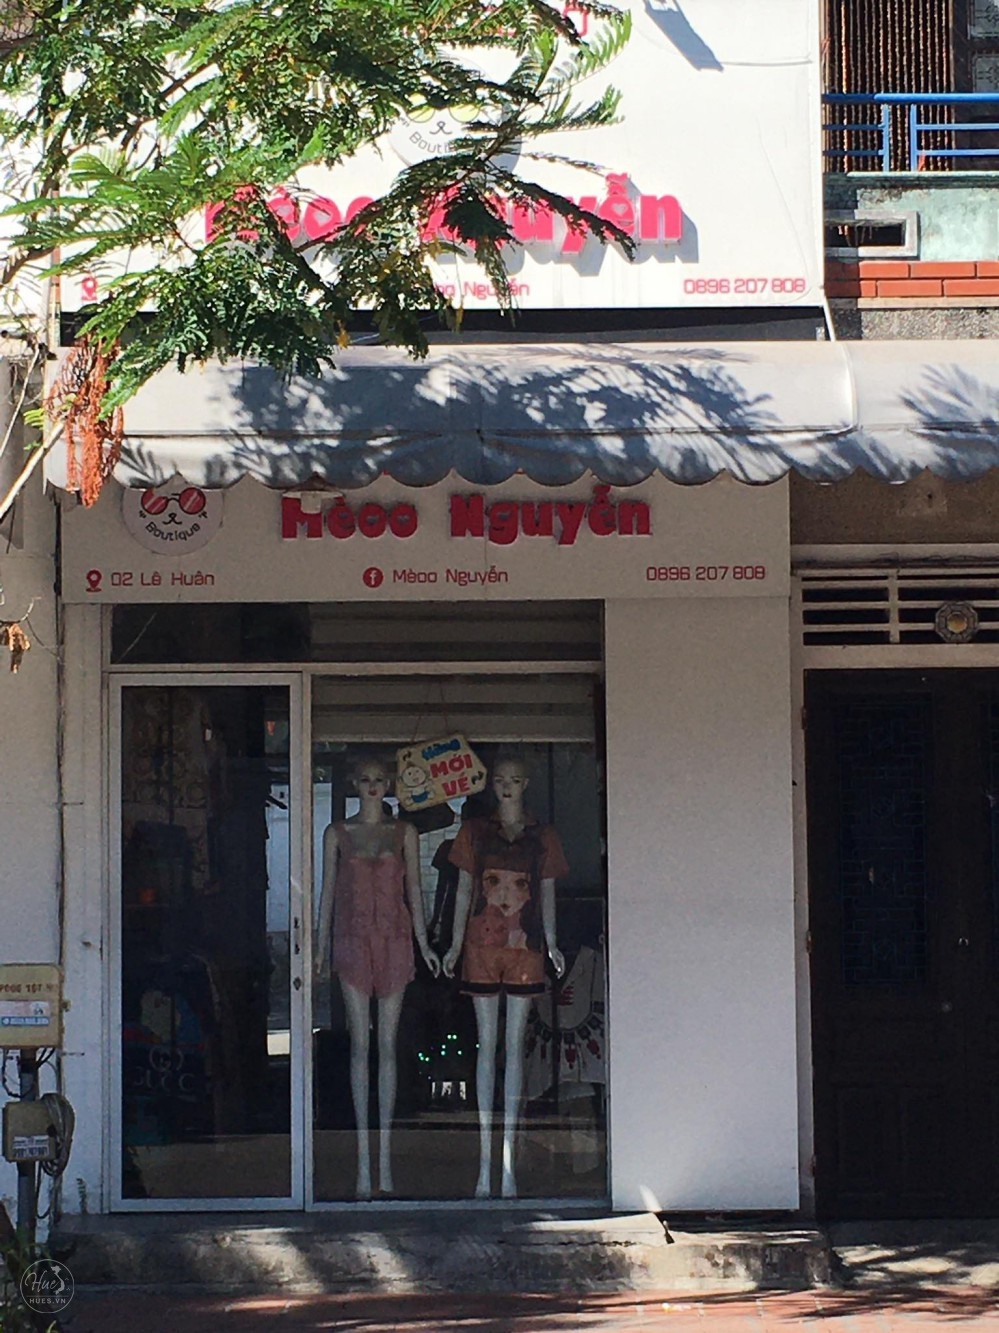 Shop Thời Trang Mèoo Nguyễn